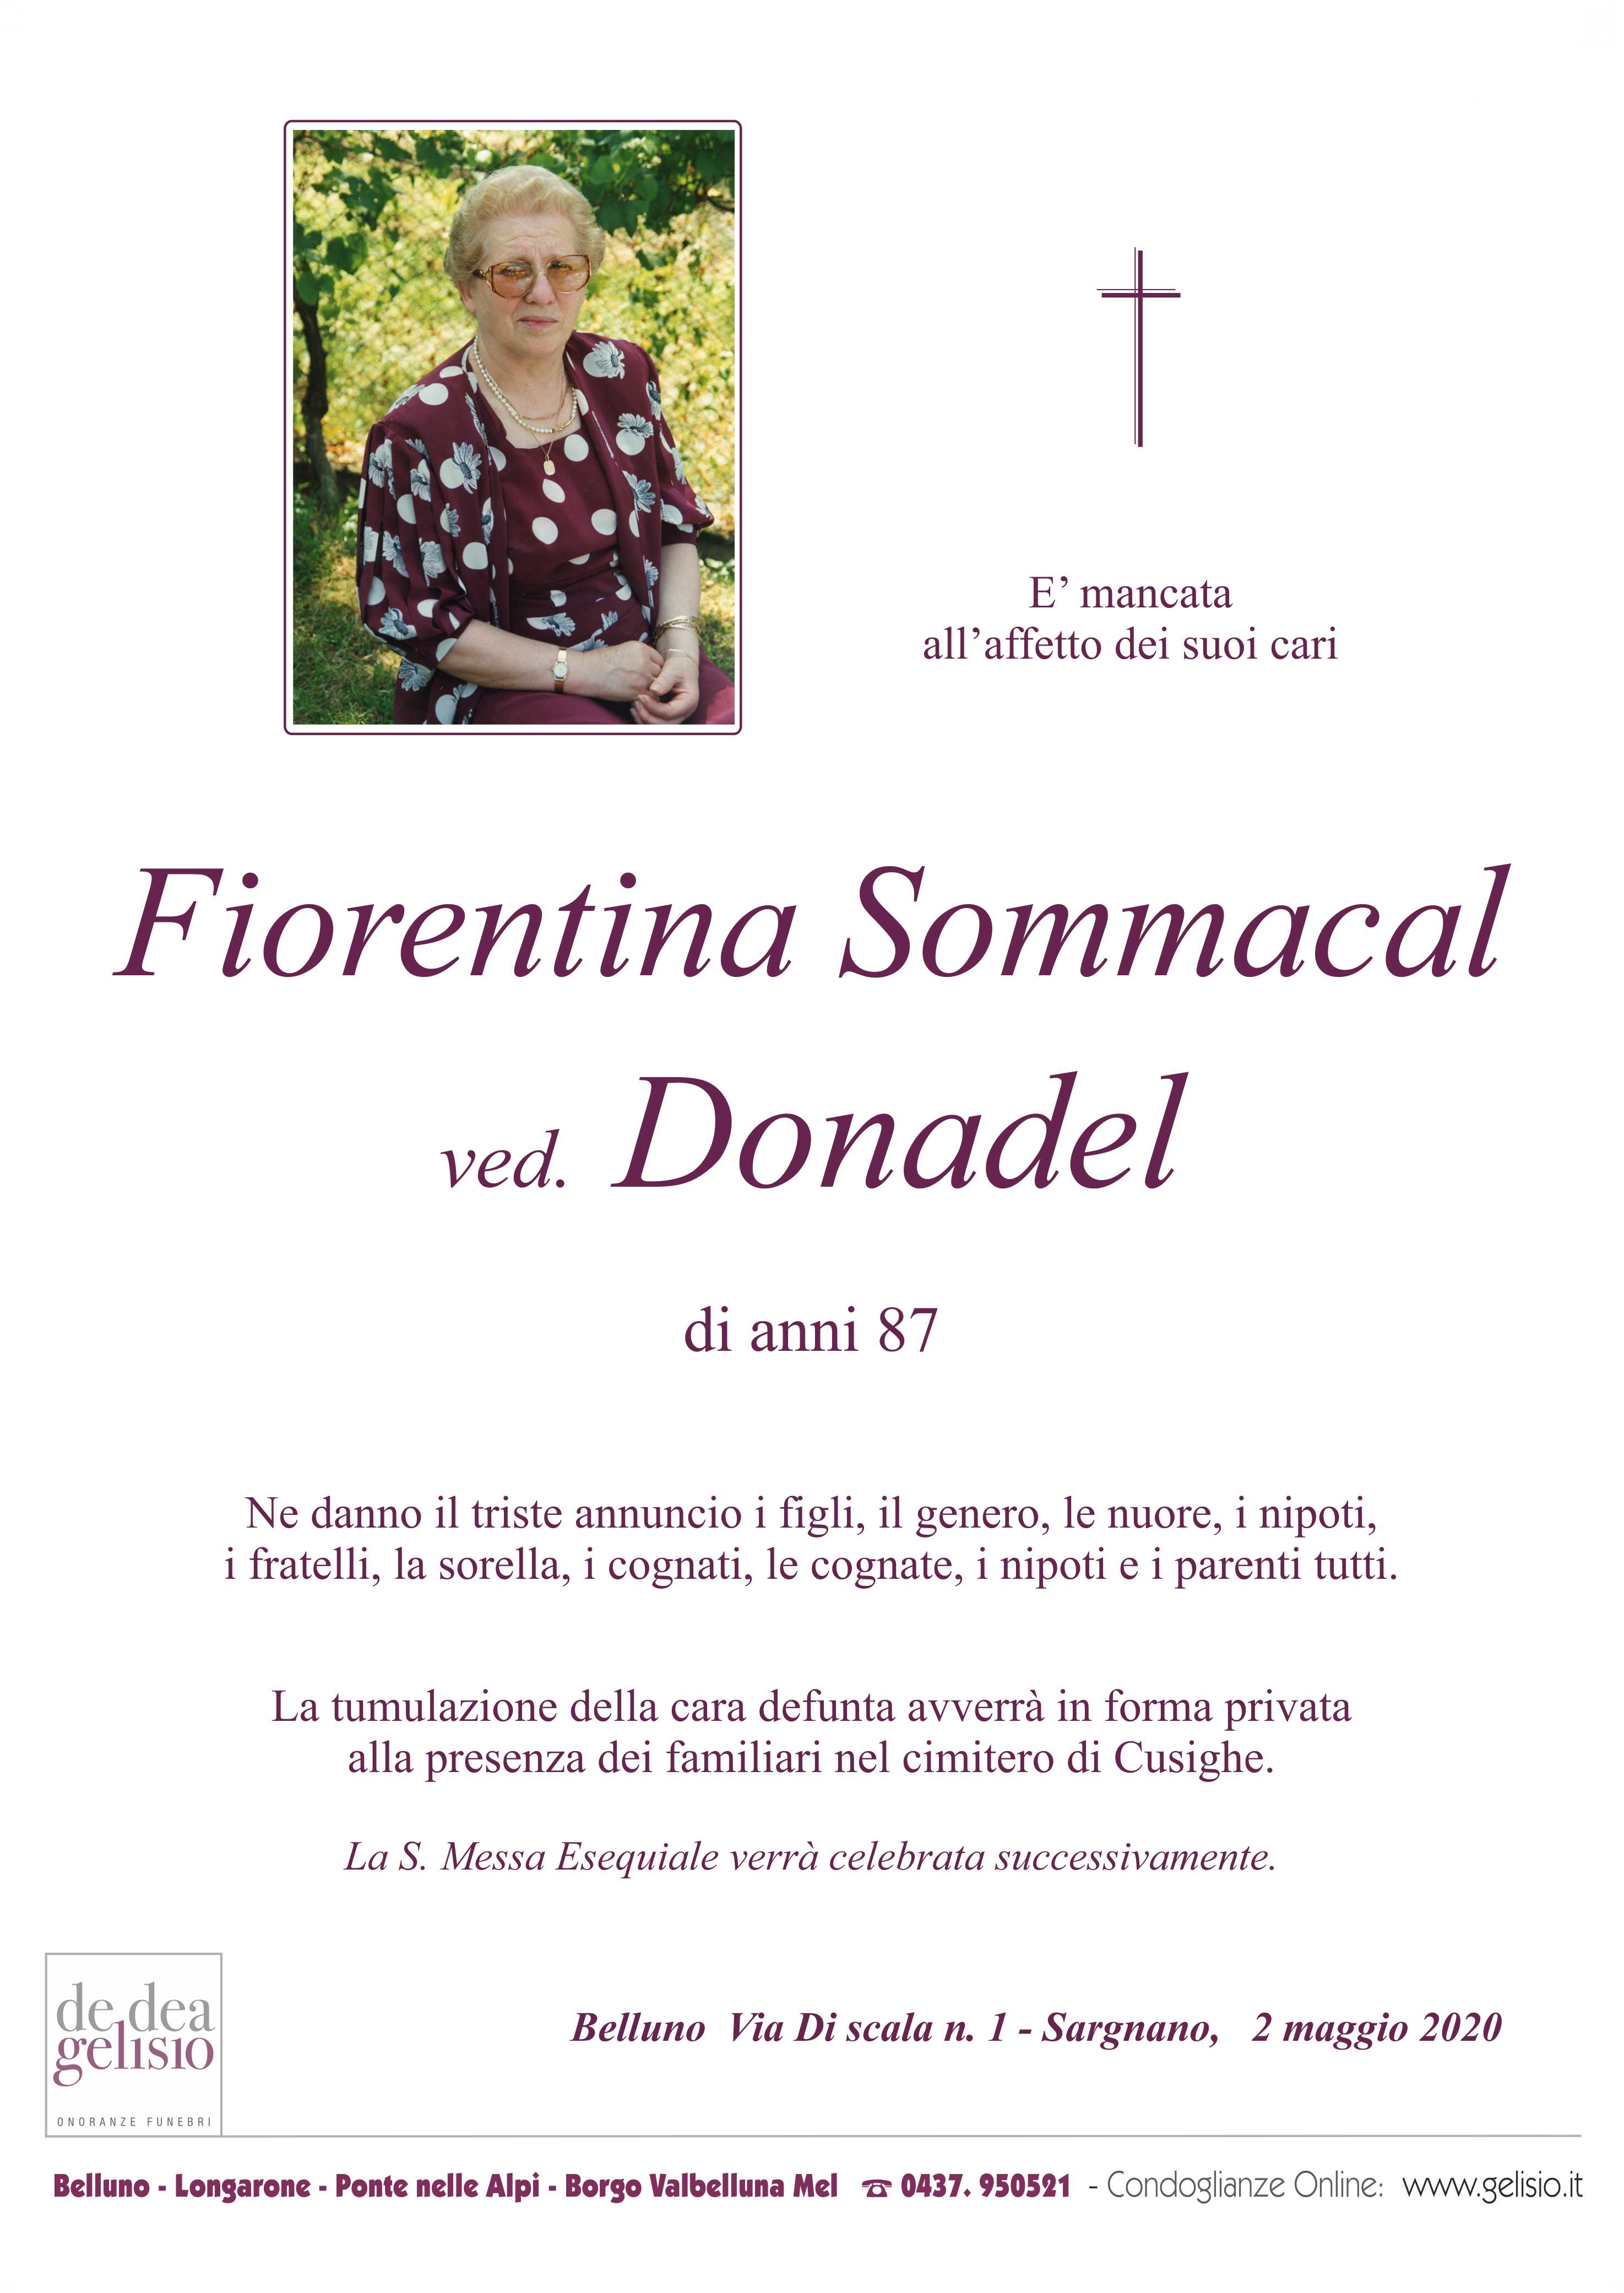 Somamcal_Fiorentina.jpg